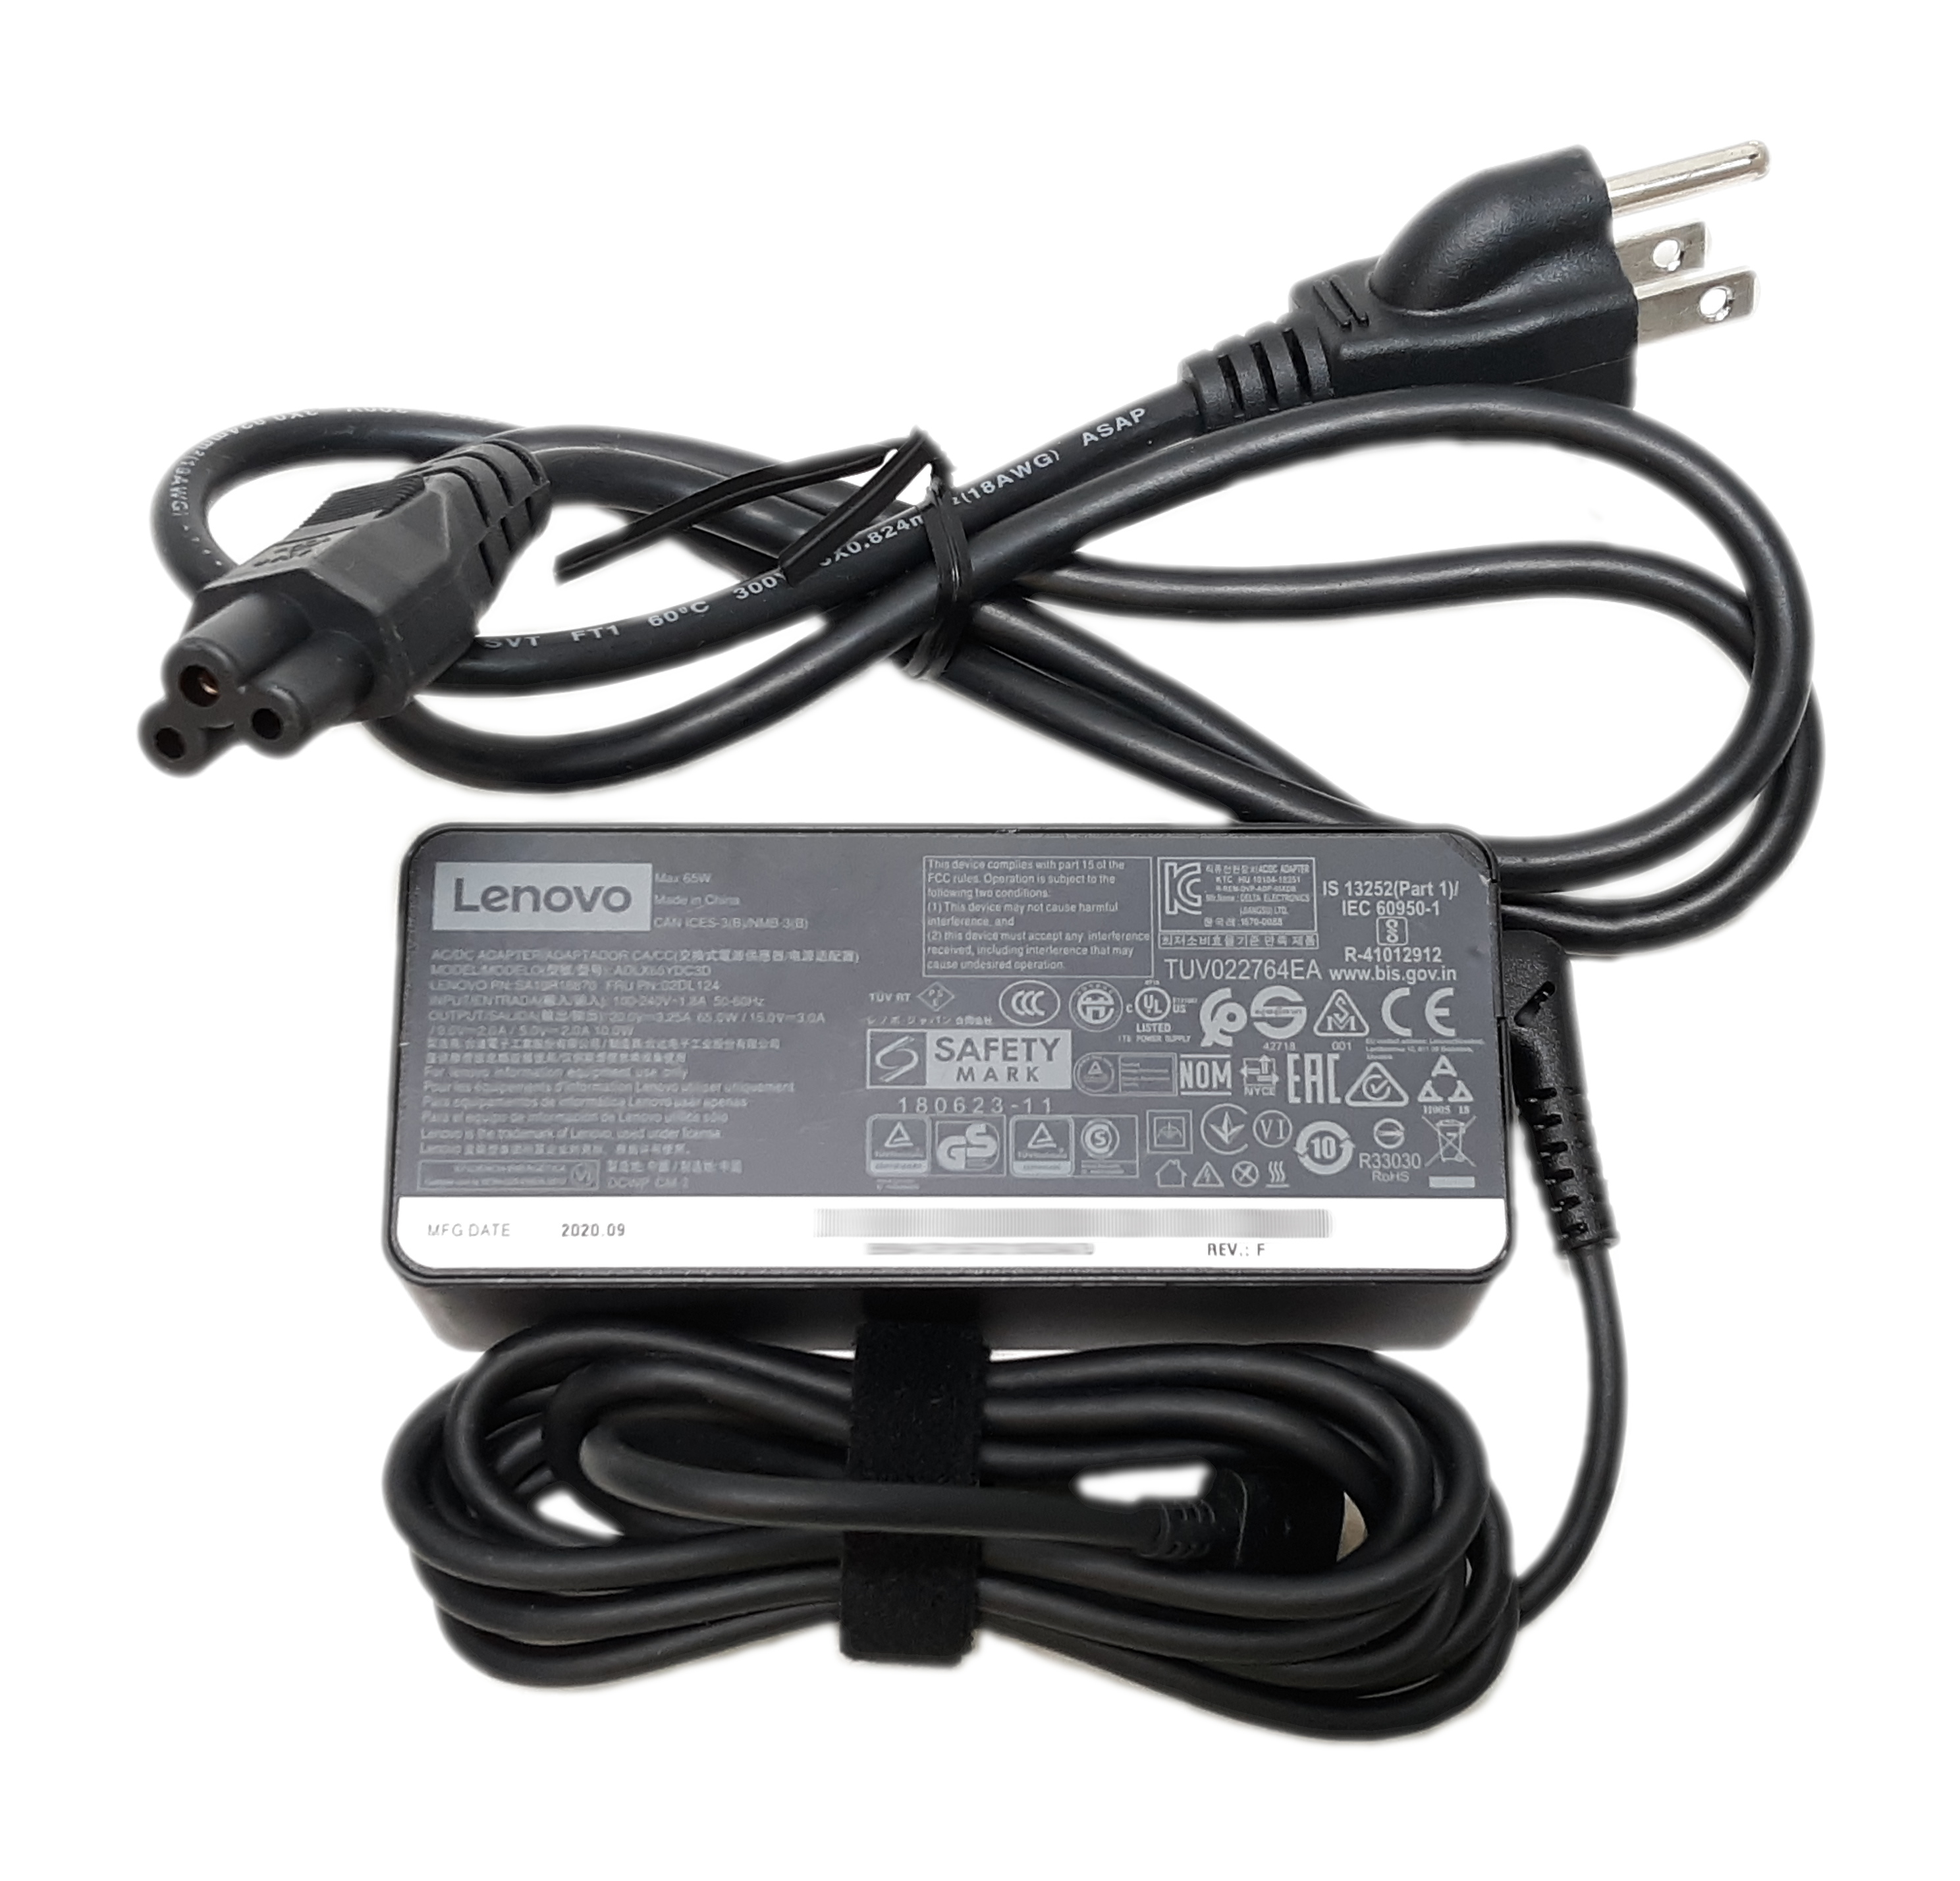 Lenovo AC Power Adapter ADLX65YLC3D 65W USB-C Input: 100-240V 1.8A Output: 5/9V 2A, 15V 3A, 20V-3.25A 02DL128